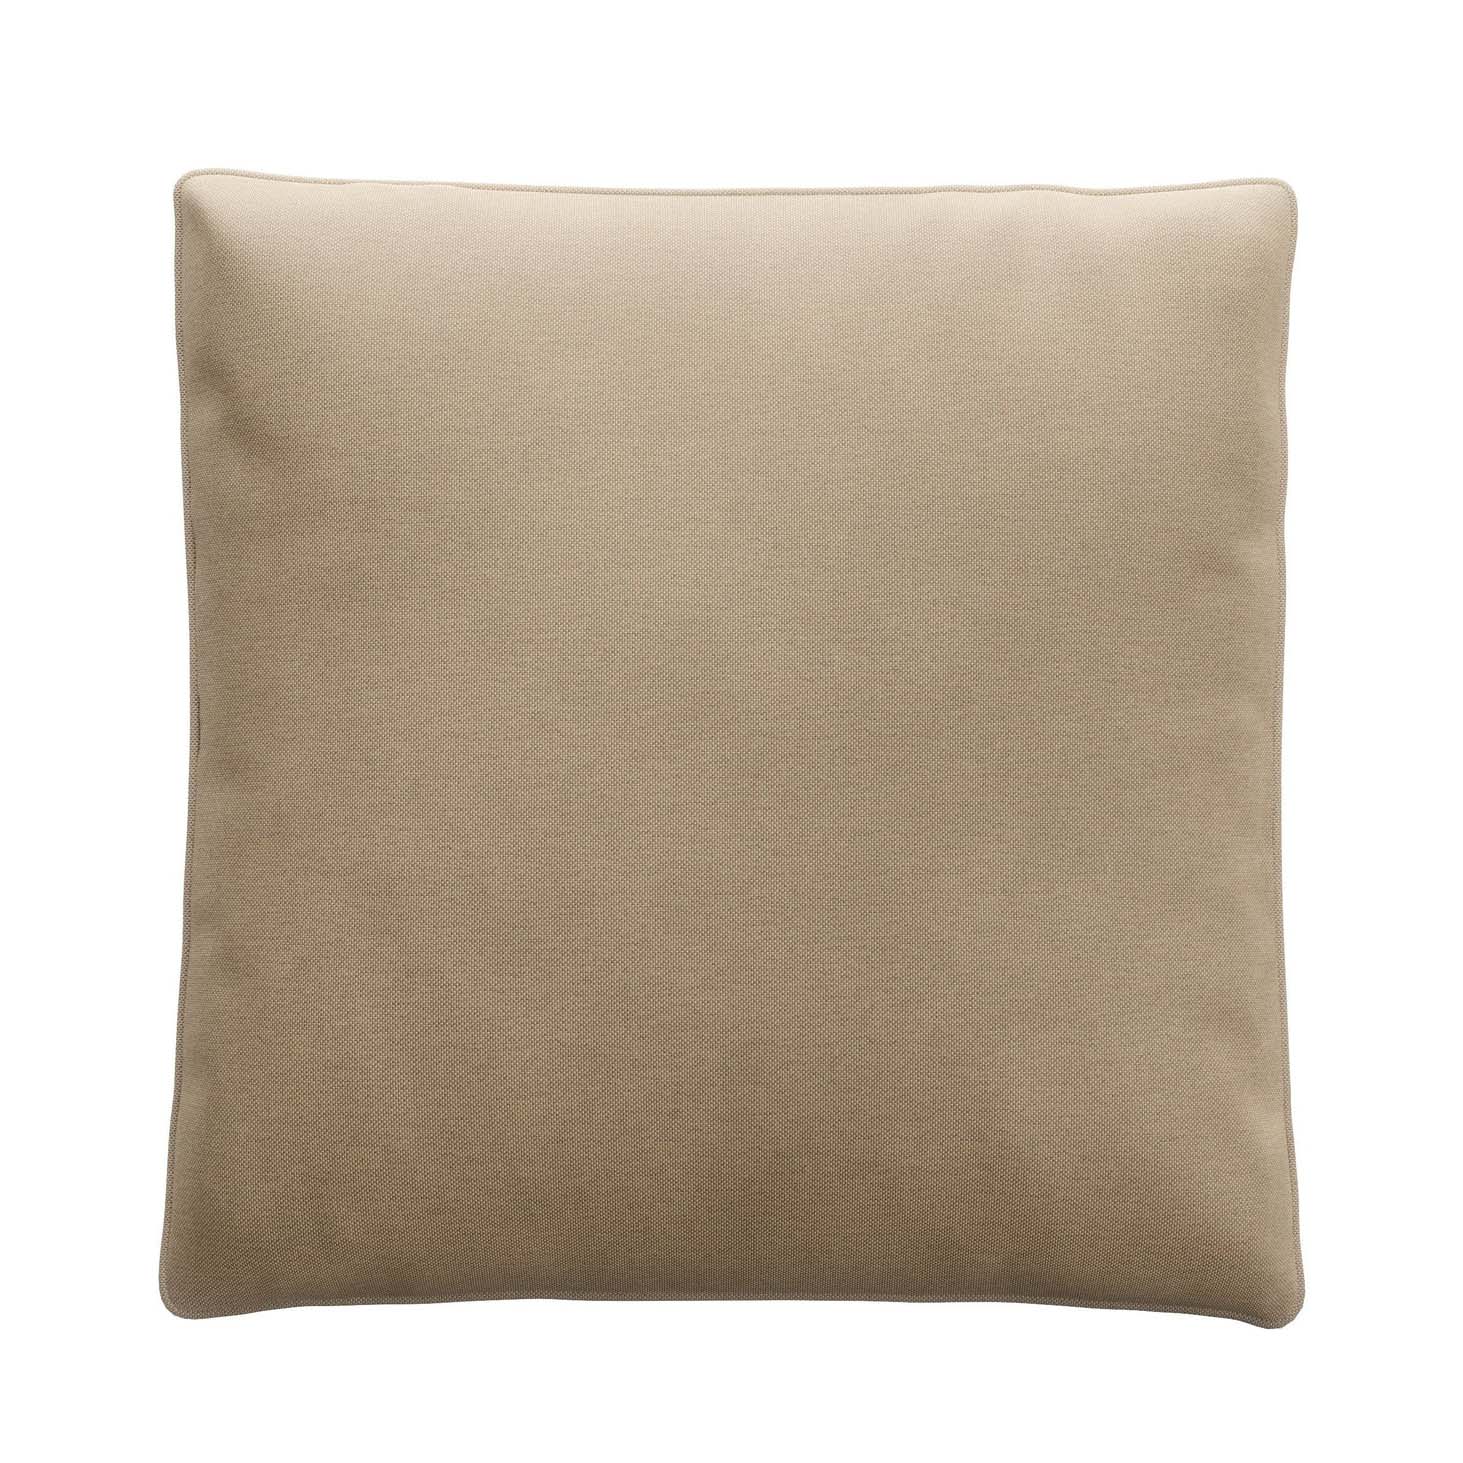 Jumbo Pillow Canvas Sand